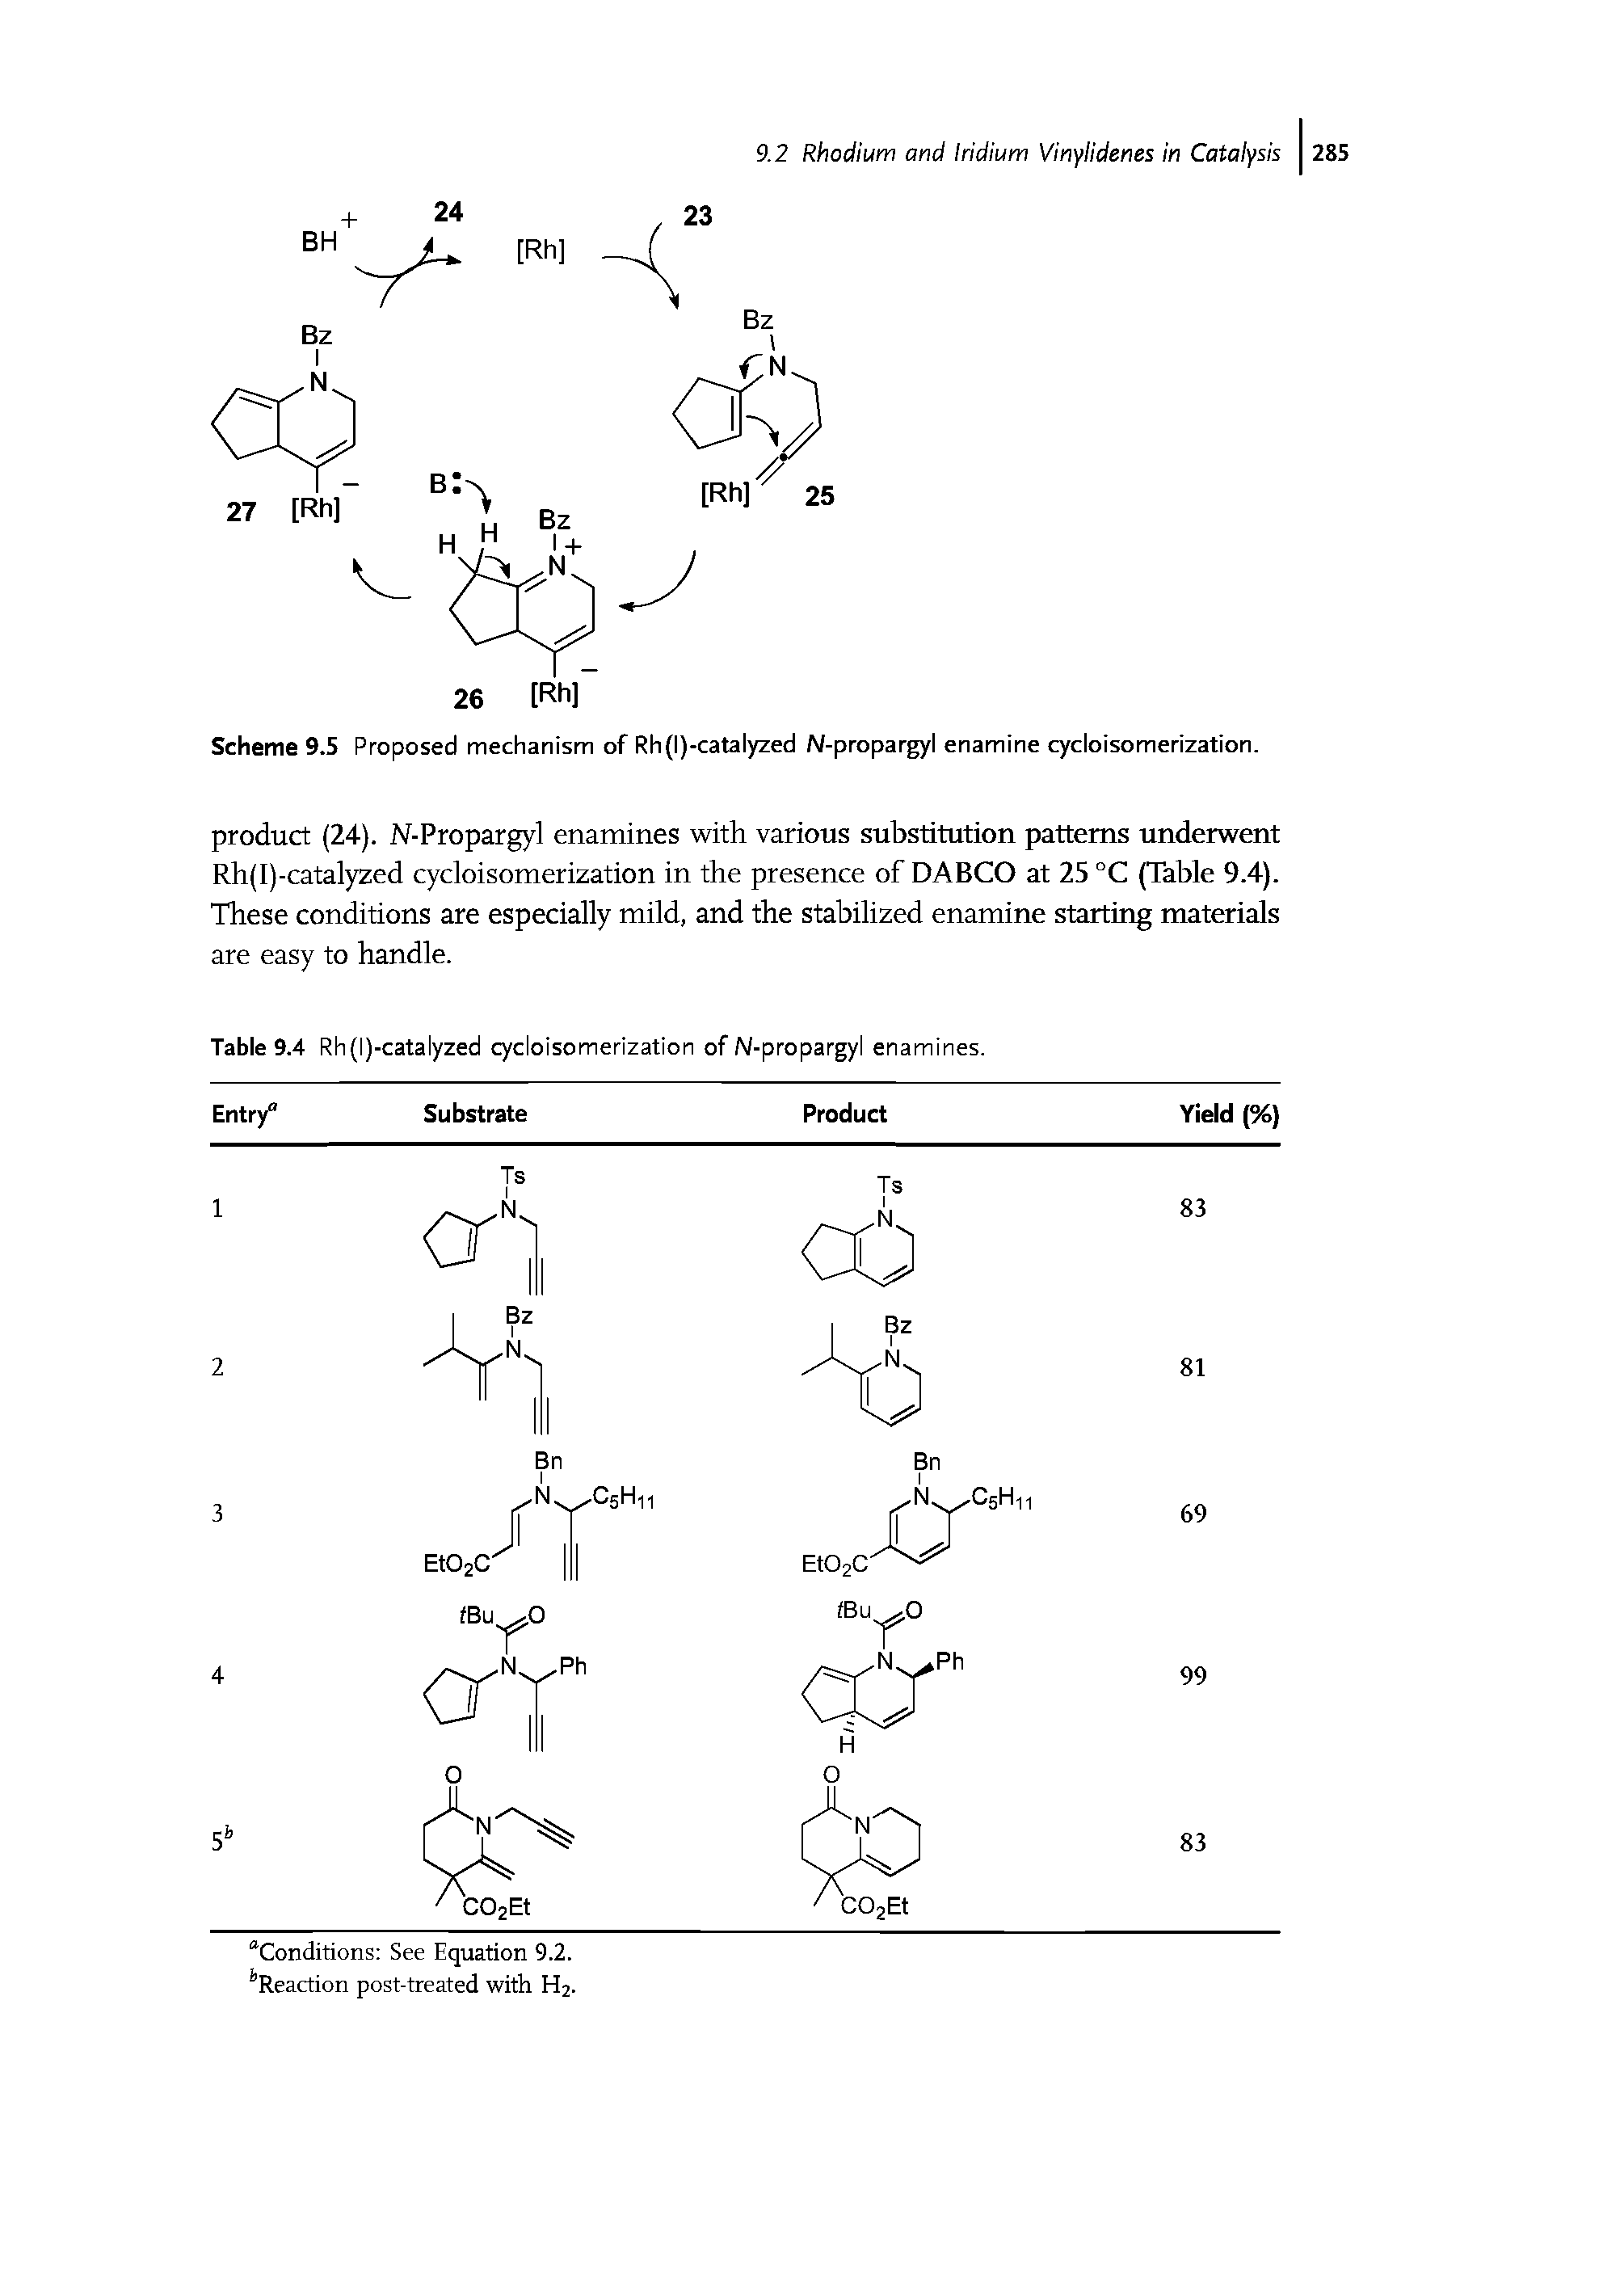 Scheme 9.5 Proposed mechanism of Rh (I)-catalyzed N-propargyl enamine cycloisomerization.